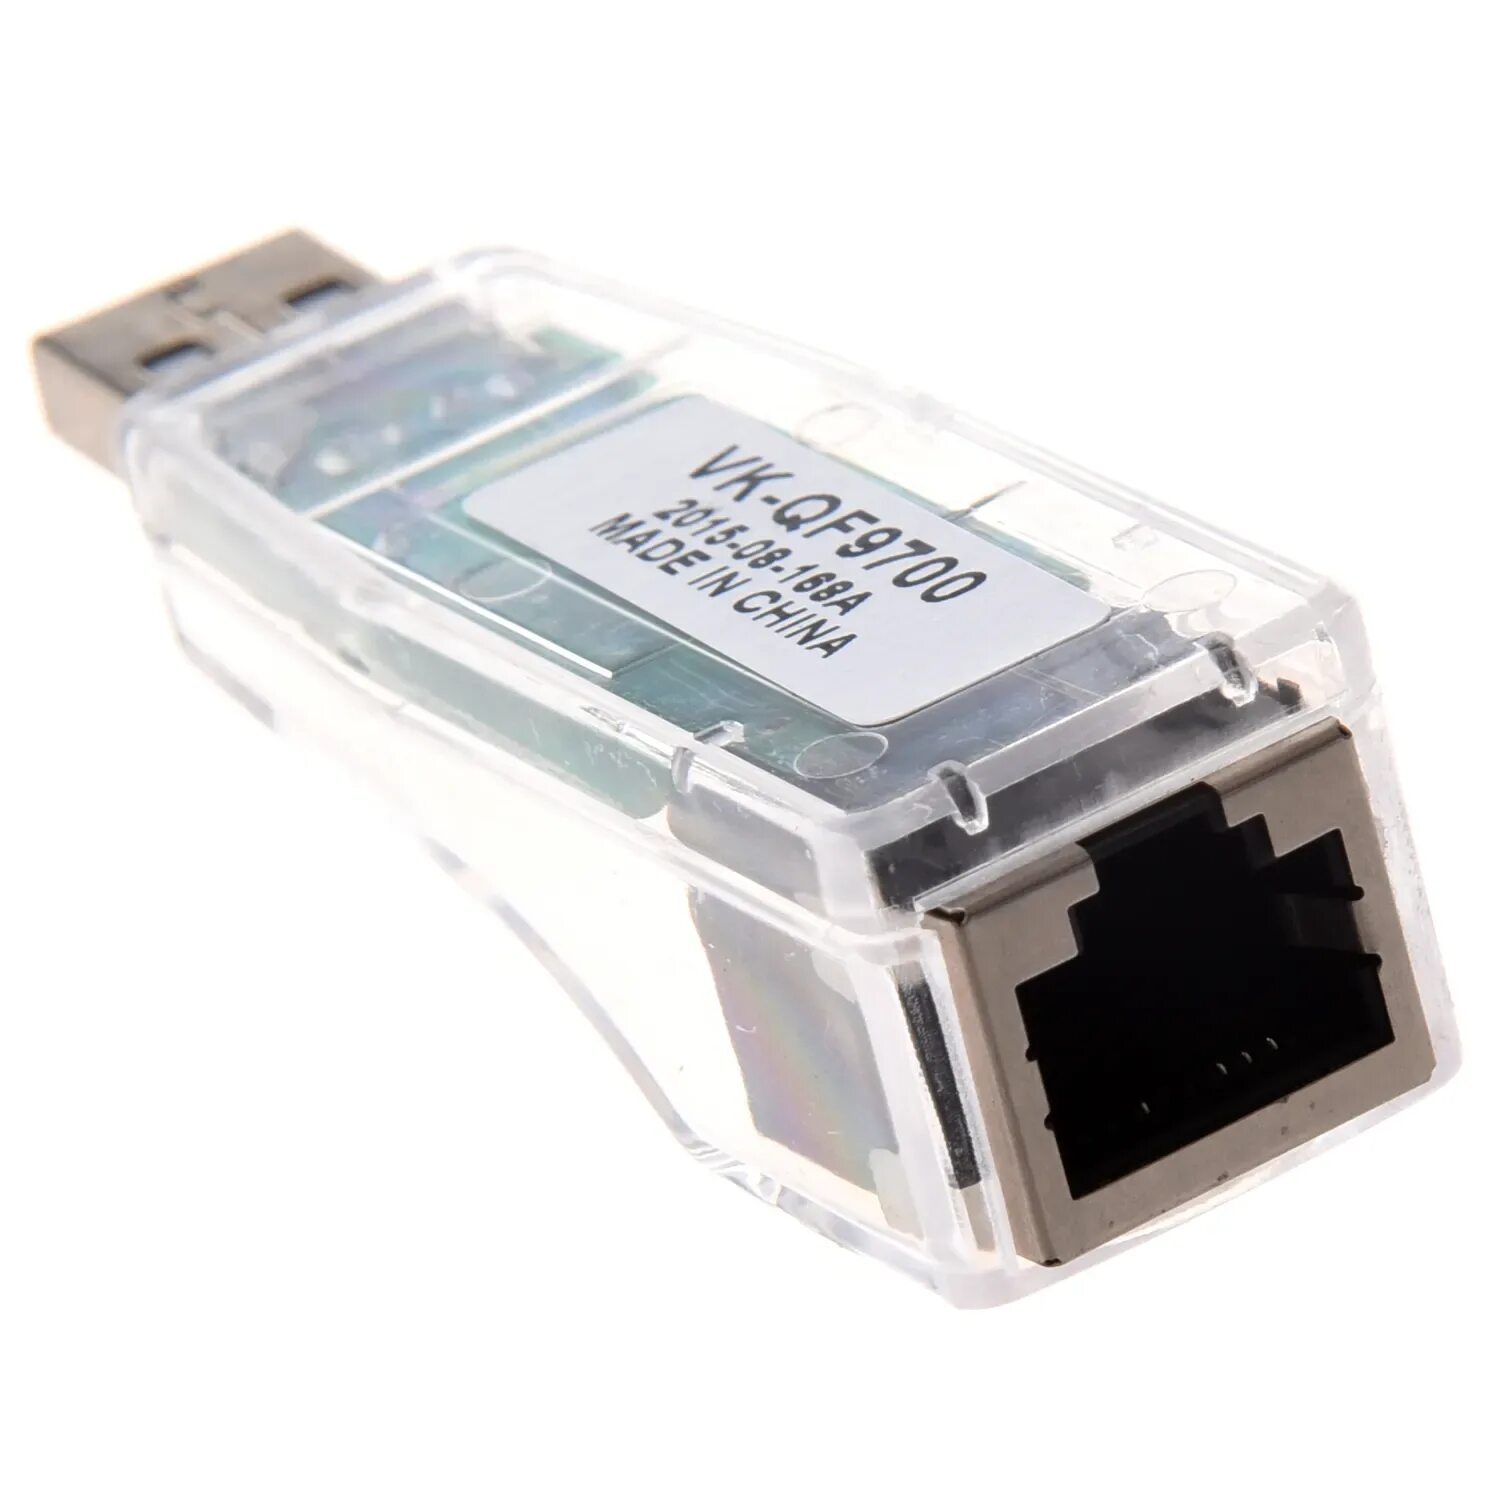 Usb rj45 купить. Адаптер USB 2.0 Ethernet rj45. USB lan rj45 адаптер. Юсб Ethernet адаптер rj45 переходник. Переходник USB rj45 Ethernet.